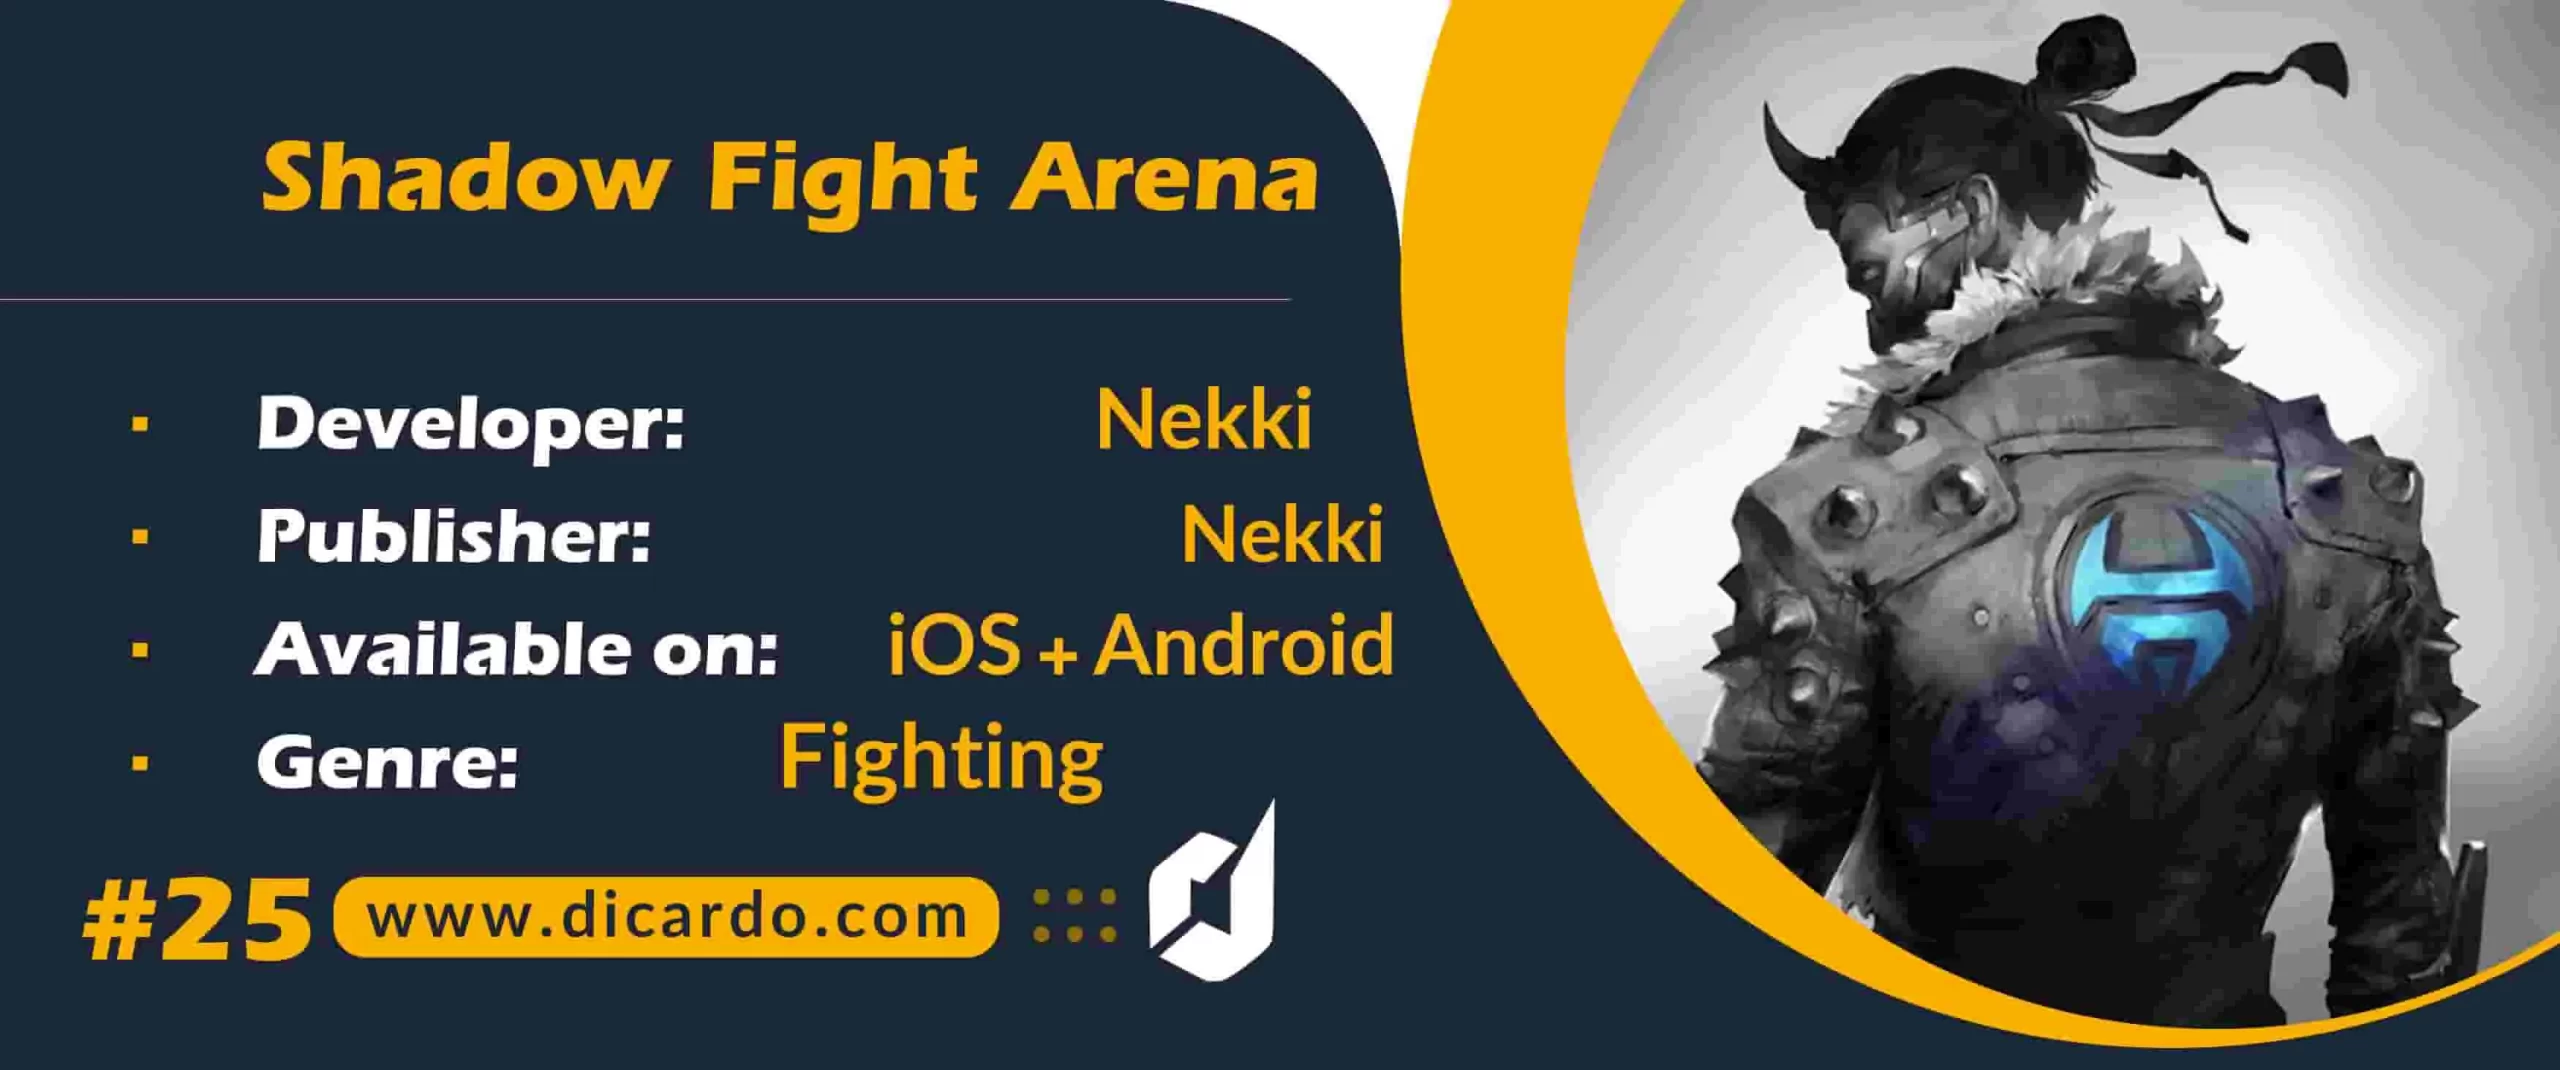 #25 شادو فایت آرنا Shadow Fight Arena آخرین مورد از لیست بهترین بازیهای جنگی و مبارزه ای